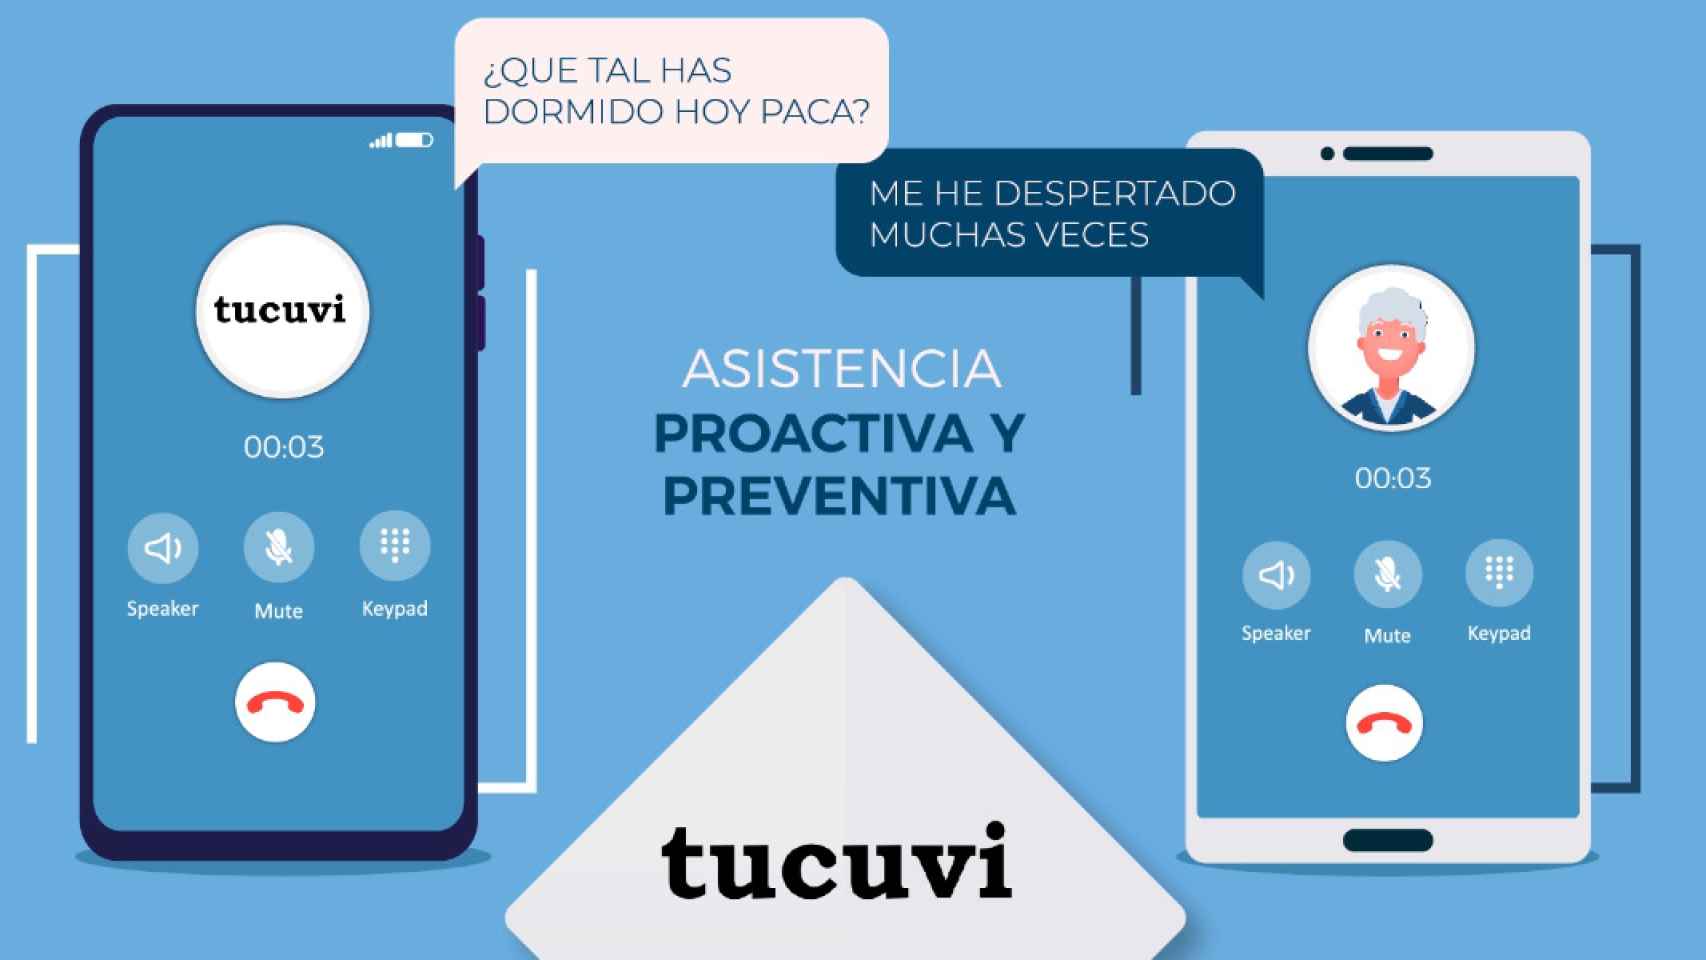 La inteligencia artificial de Tucuvi, a través del cuidador virtual 'Lola', es capaz de hablar con miles de pacientes por llamadas de teléfono, hacer un seguimiento sobre sus patologías y detectar posibles alertas que envía en tiempo real a los profesionales sanitarios.